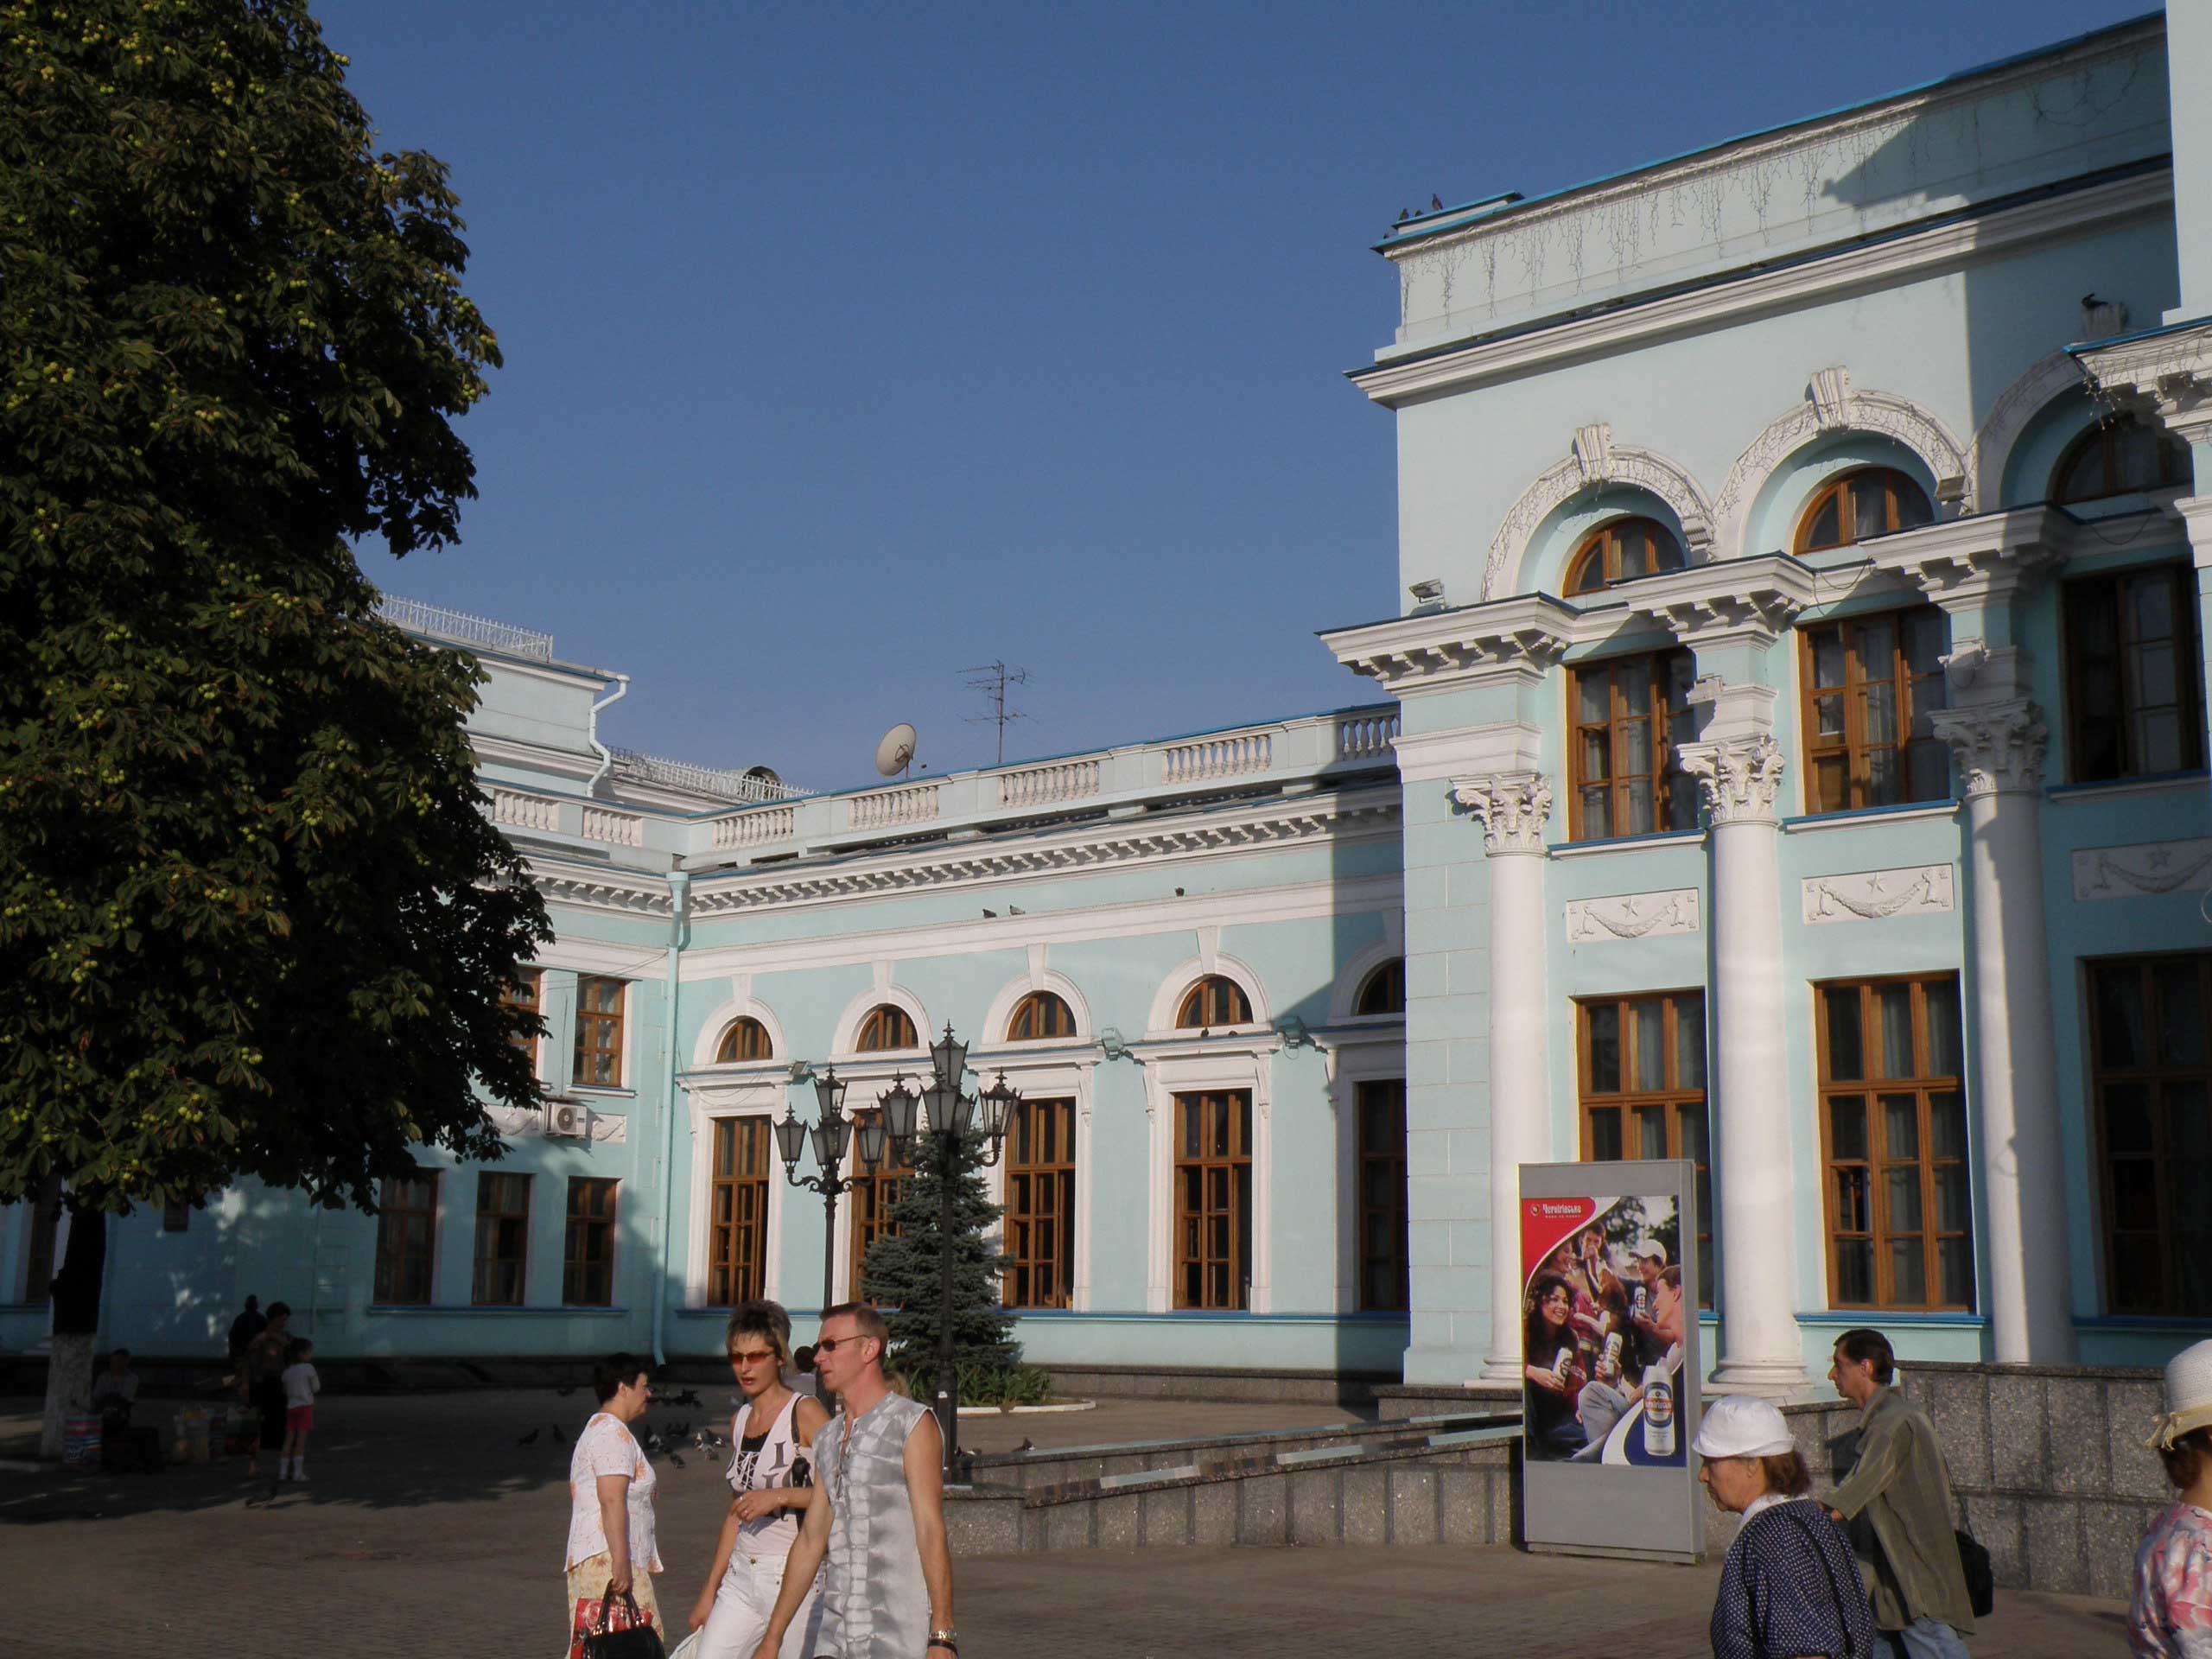 Донецьк і війна: історія архітектури, Юзівка, десталінізація й окупація